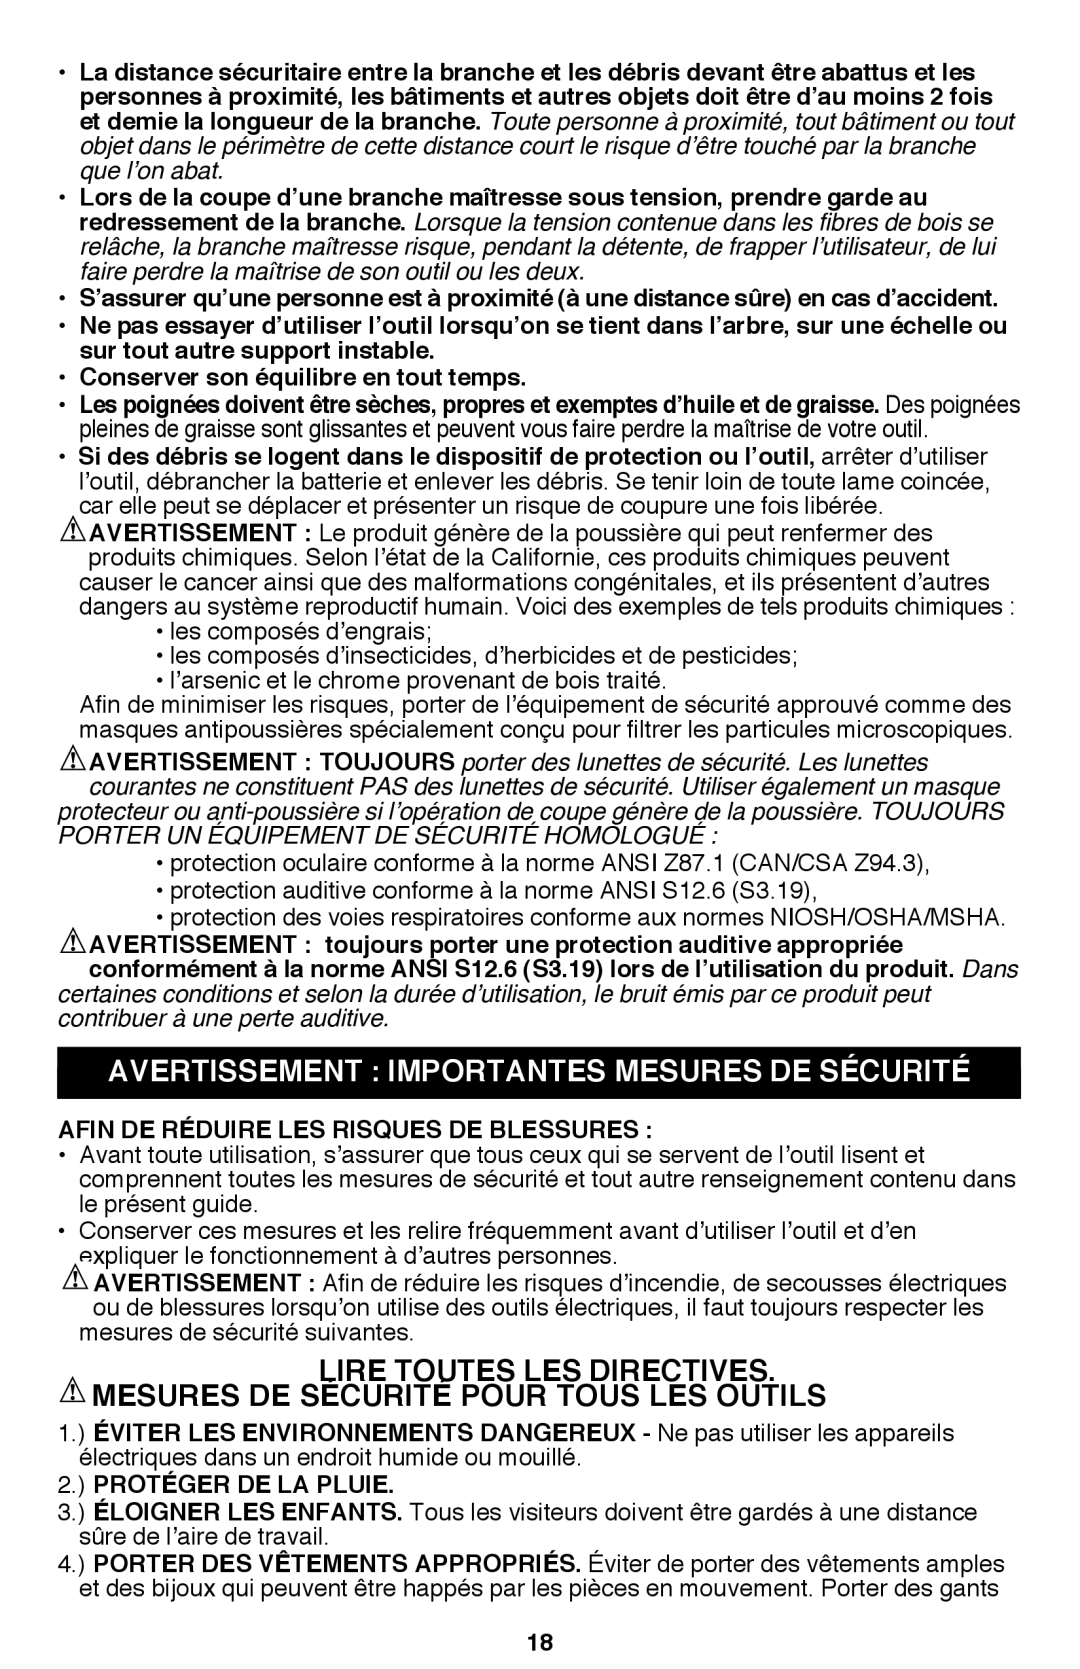 Black & Decker PSL12 instruction manual Avertissement Importantes Mesures De Sécurité 